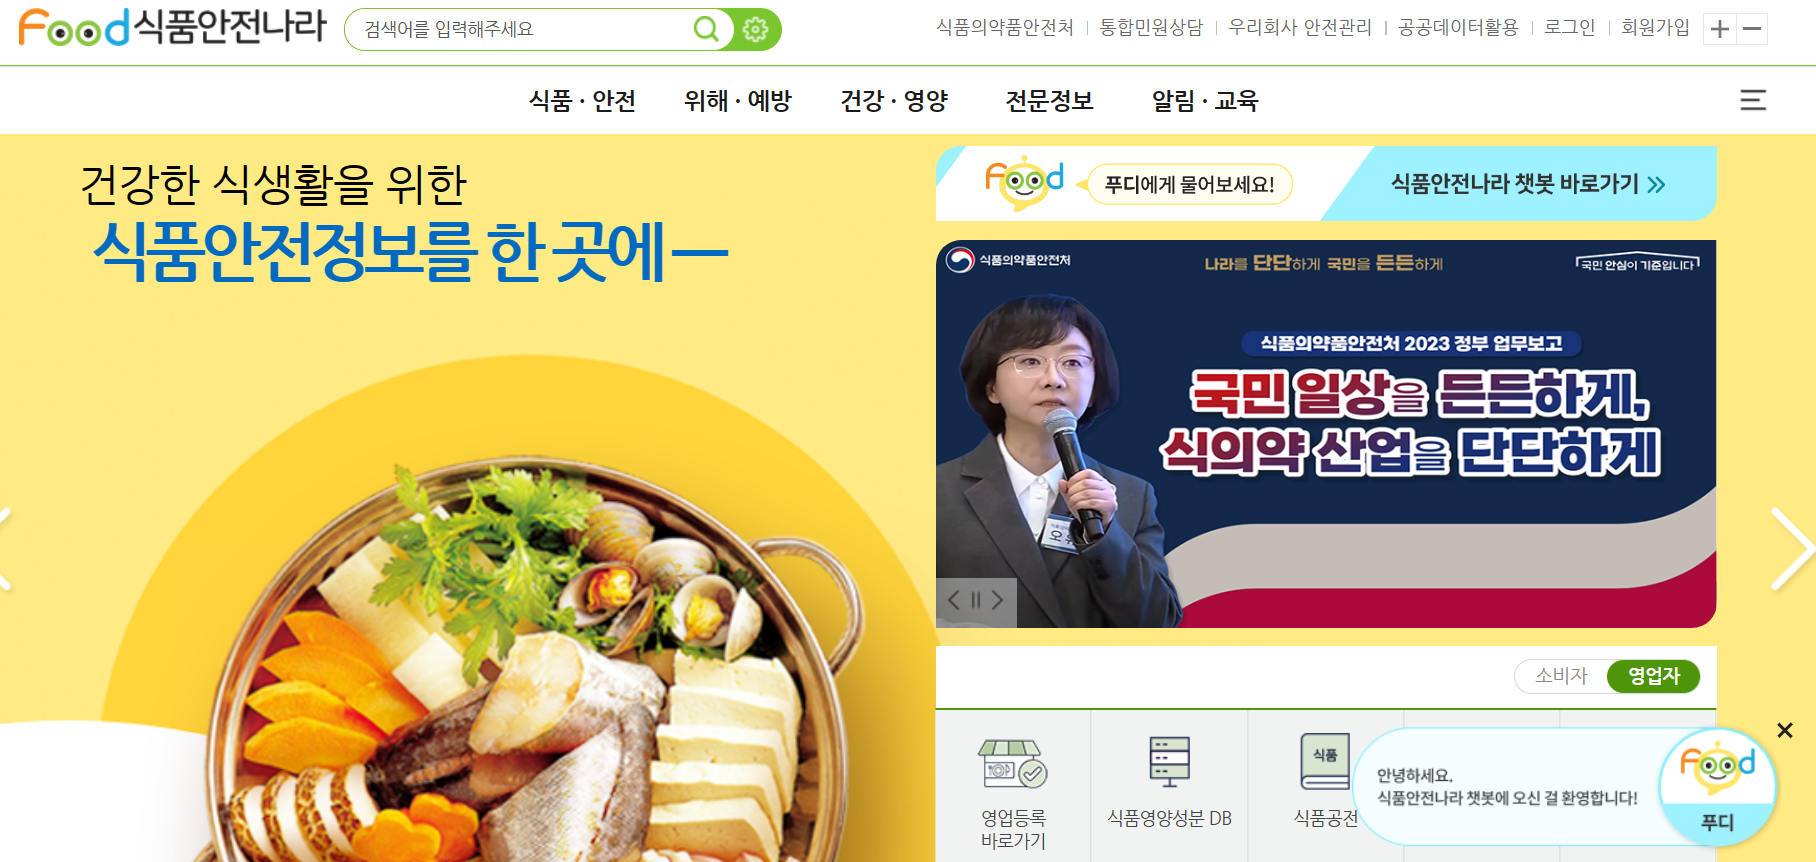 식품안전나라 홈페이지